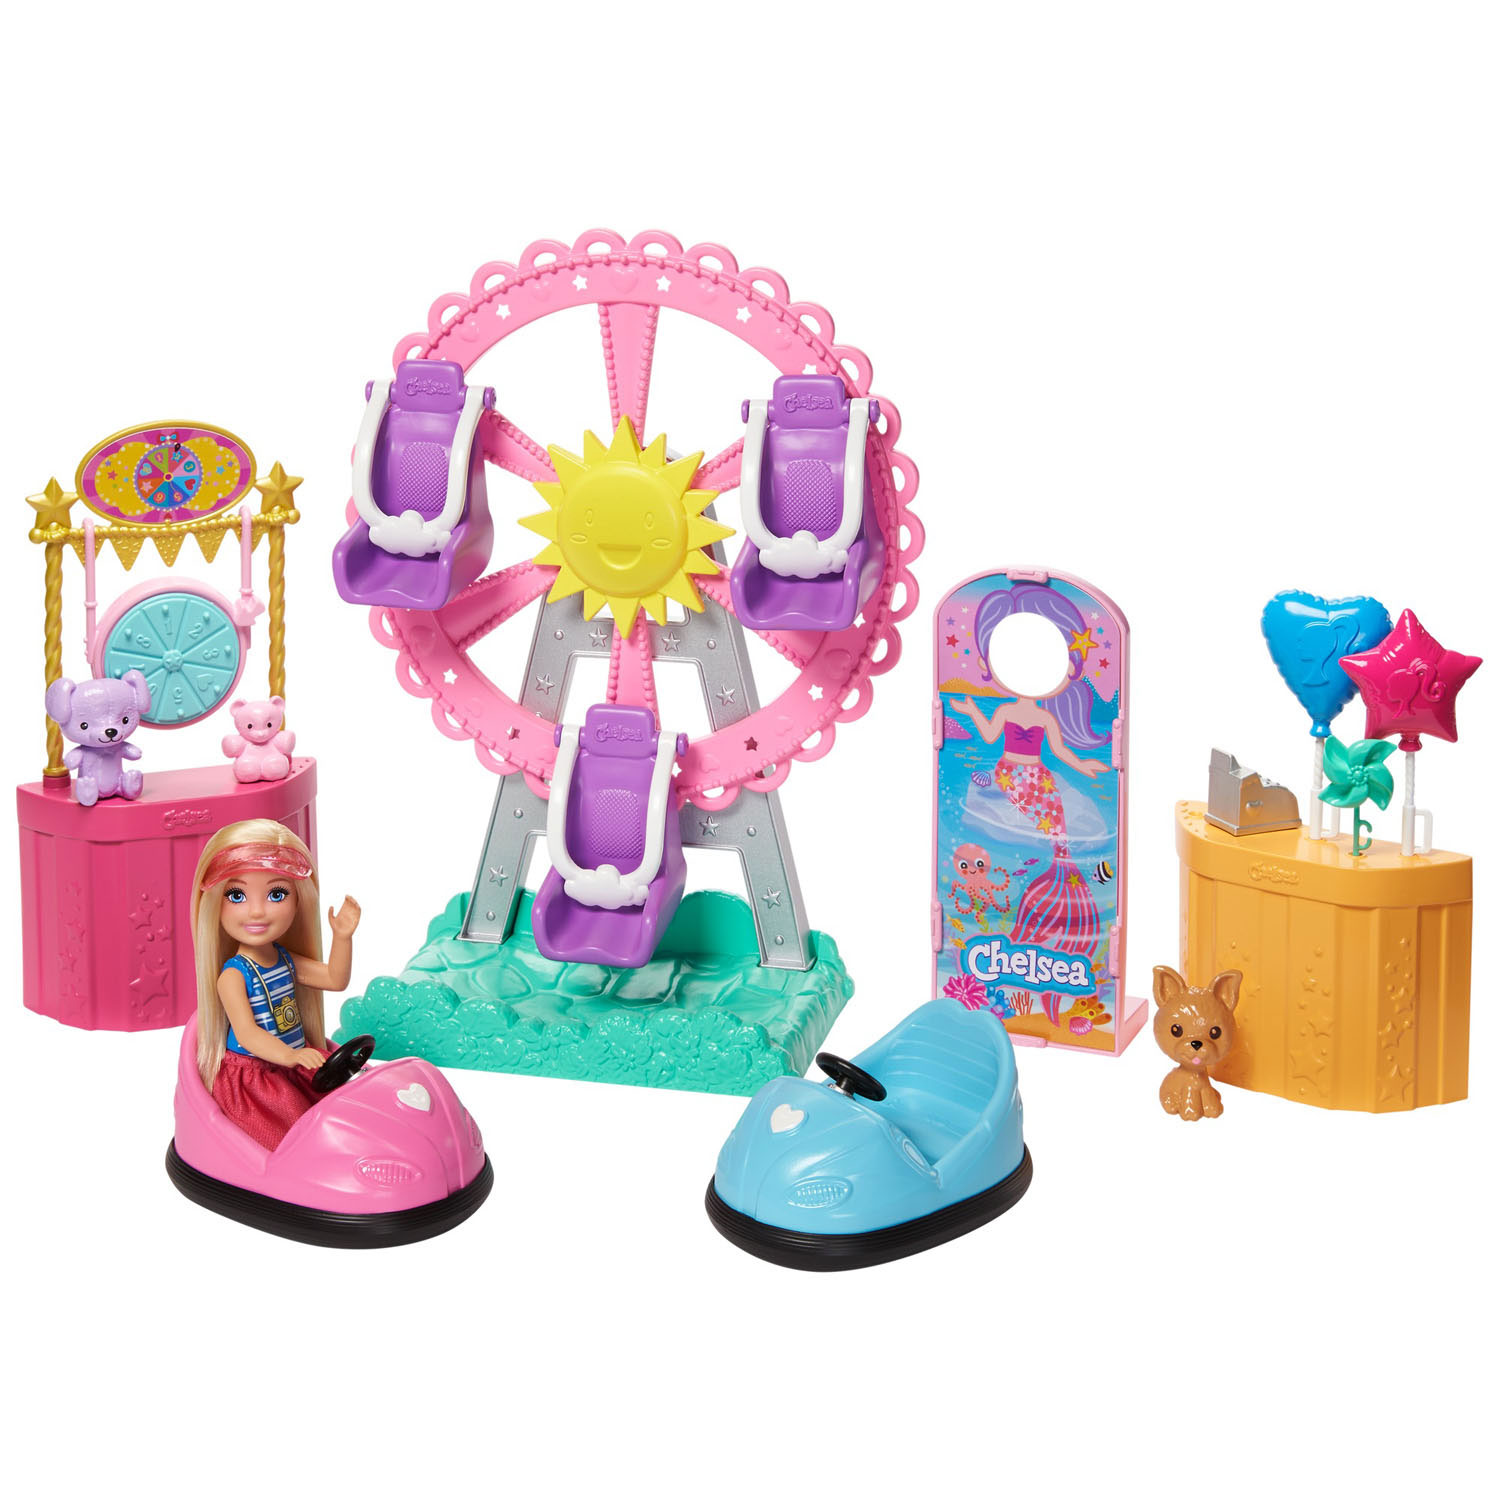 Nietje werk Vriendelijkheid Barbie Chelsea Kermis Speelset online kopen | Lobbes Speelgoed